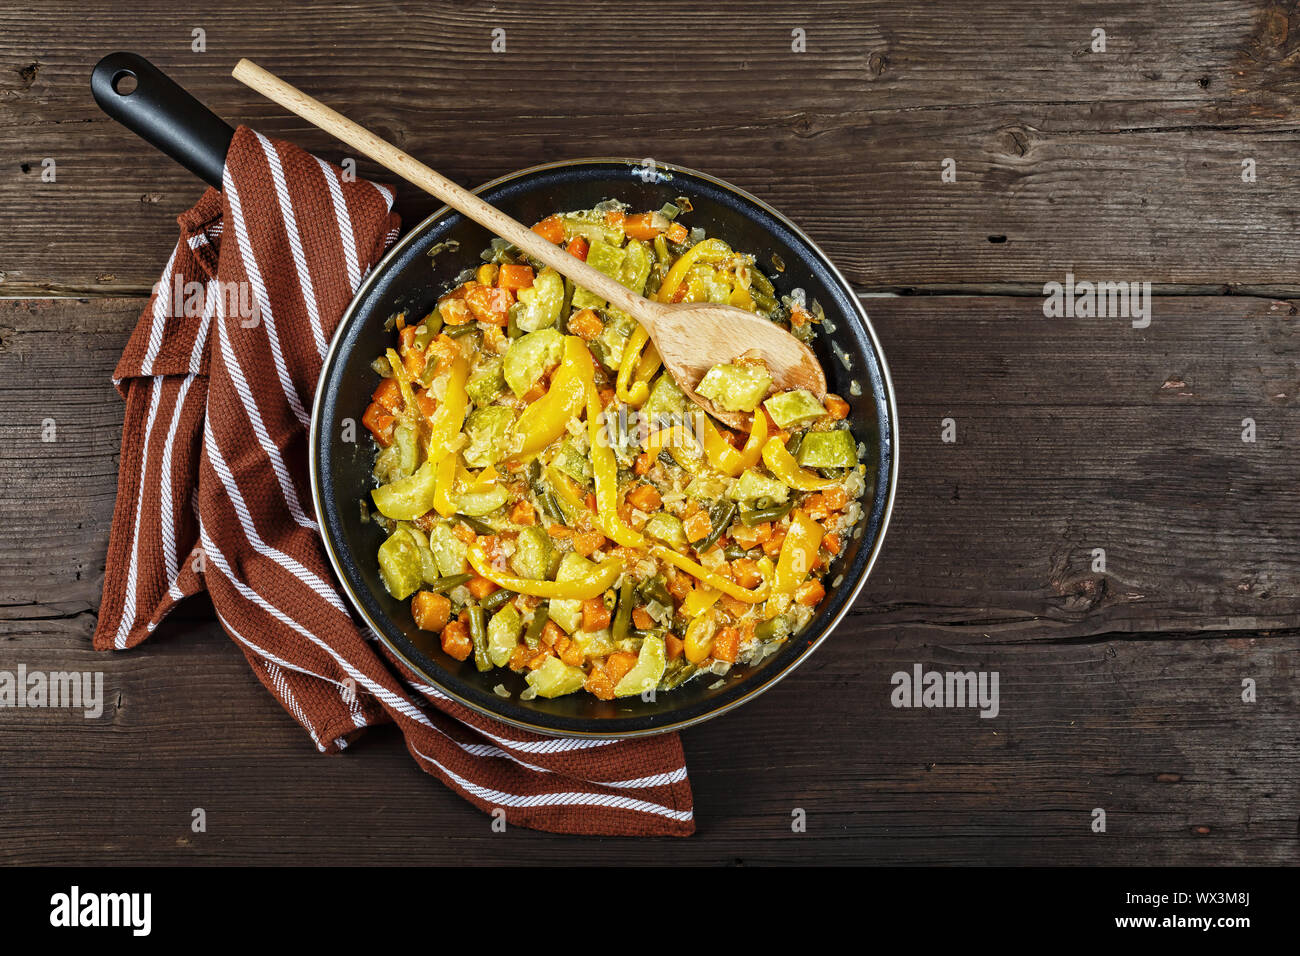 Stewed vegetables, vegetables pan, vegetarian food, top view Stock Photo